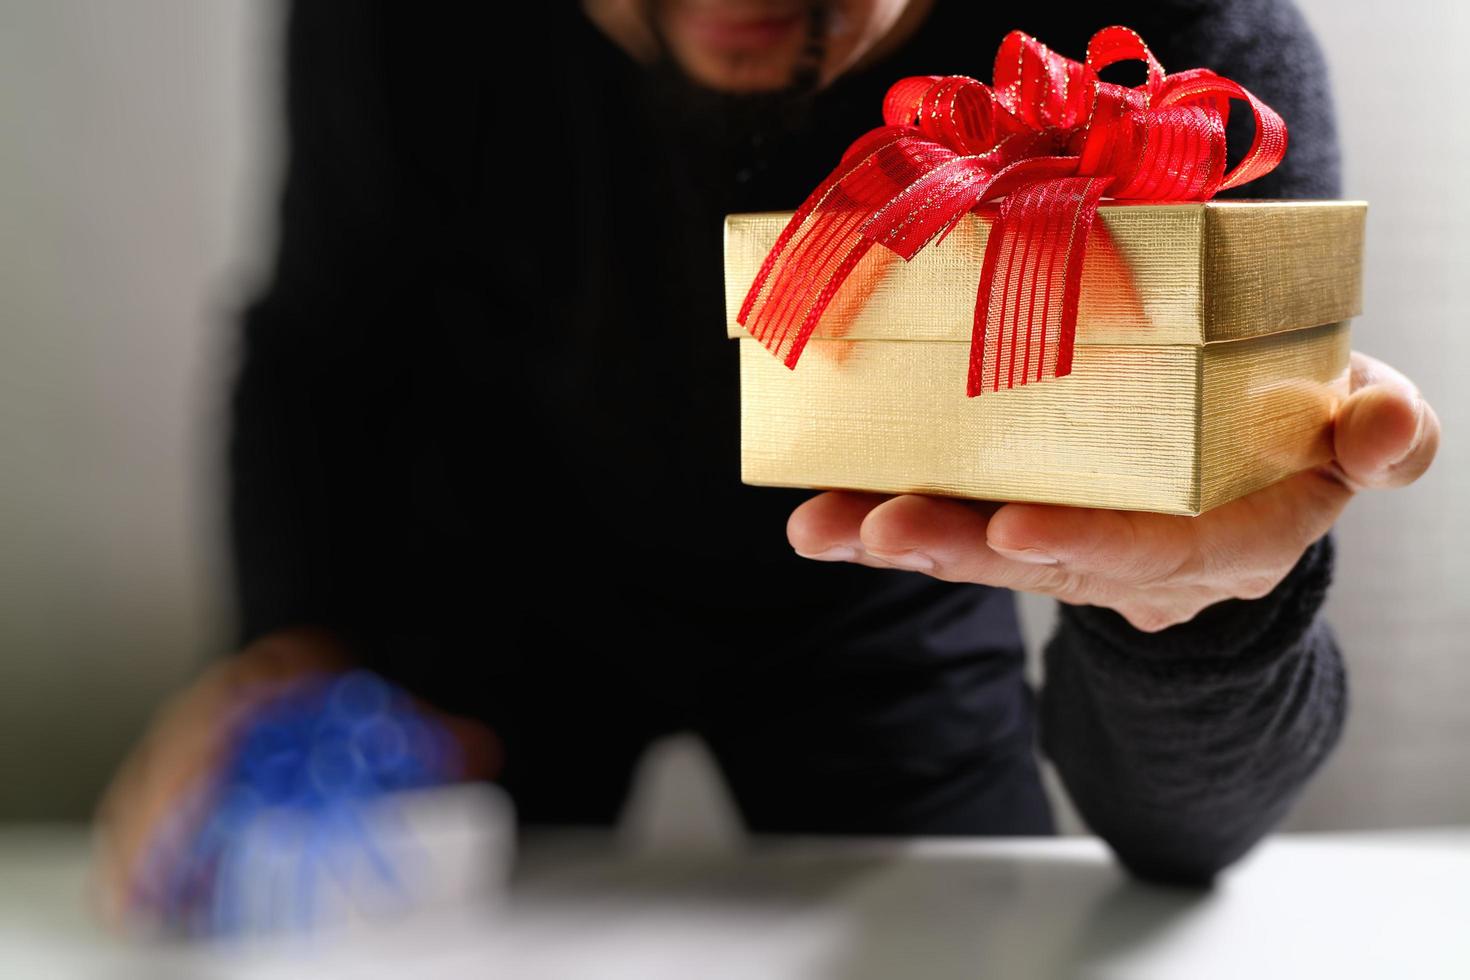 entrega de regalos, mano de hombre sosteniendo una caja de regalo en un gesto de dar. fondo borroso, efecto bokeh foto